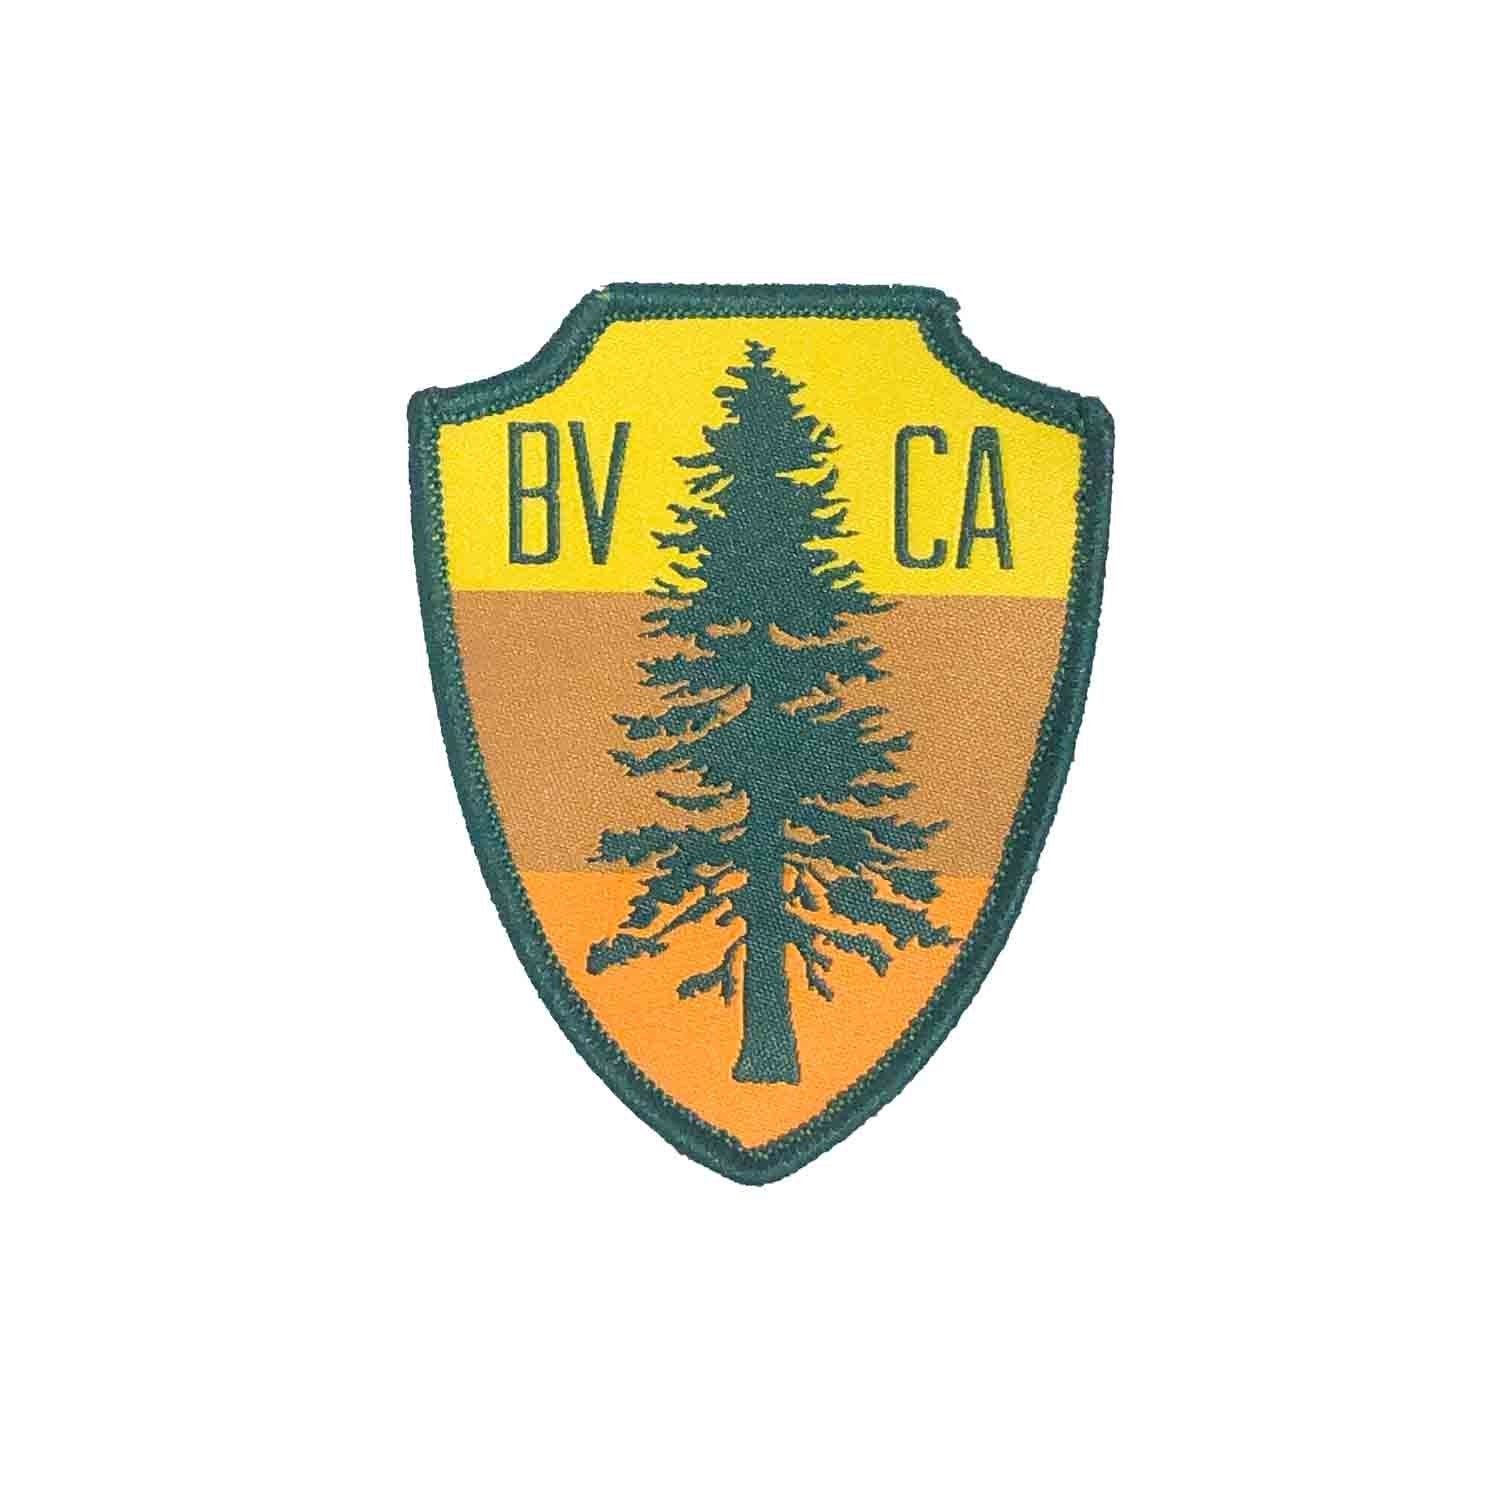 BVCA FIR TREE PATCH